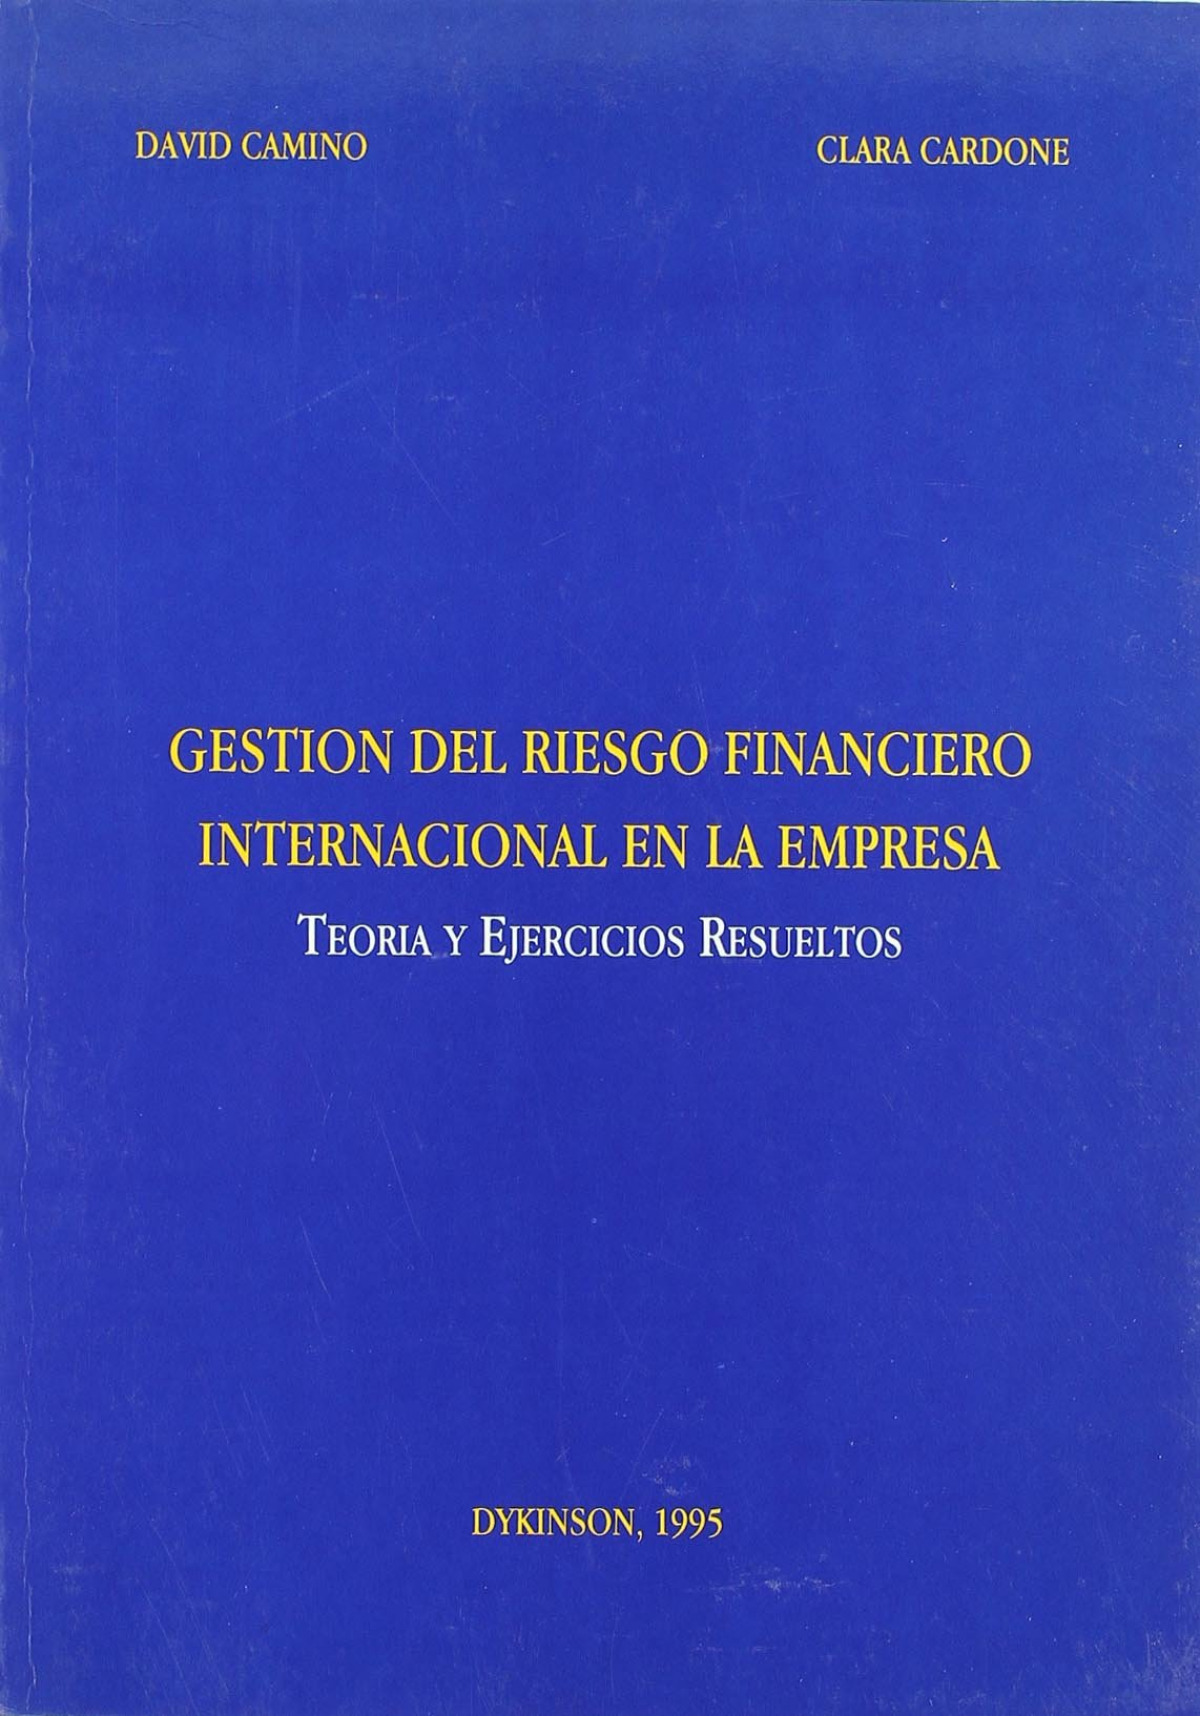 GESTION DEL RIESGO FINANCIERO INTERNACIONAL EN LA EMPRESA. Teoría y ejercicios resueltos. - Camino, D./Cardone, C.